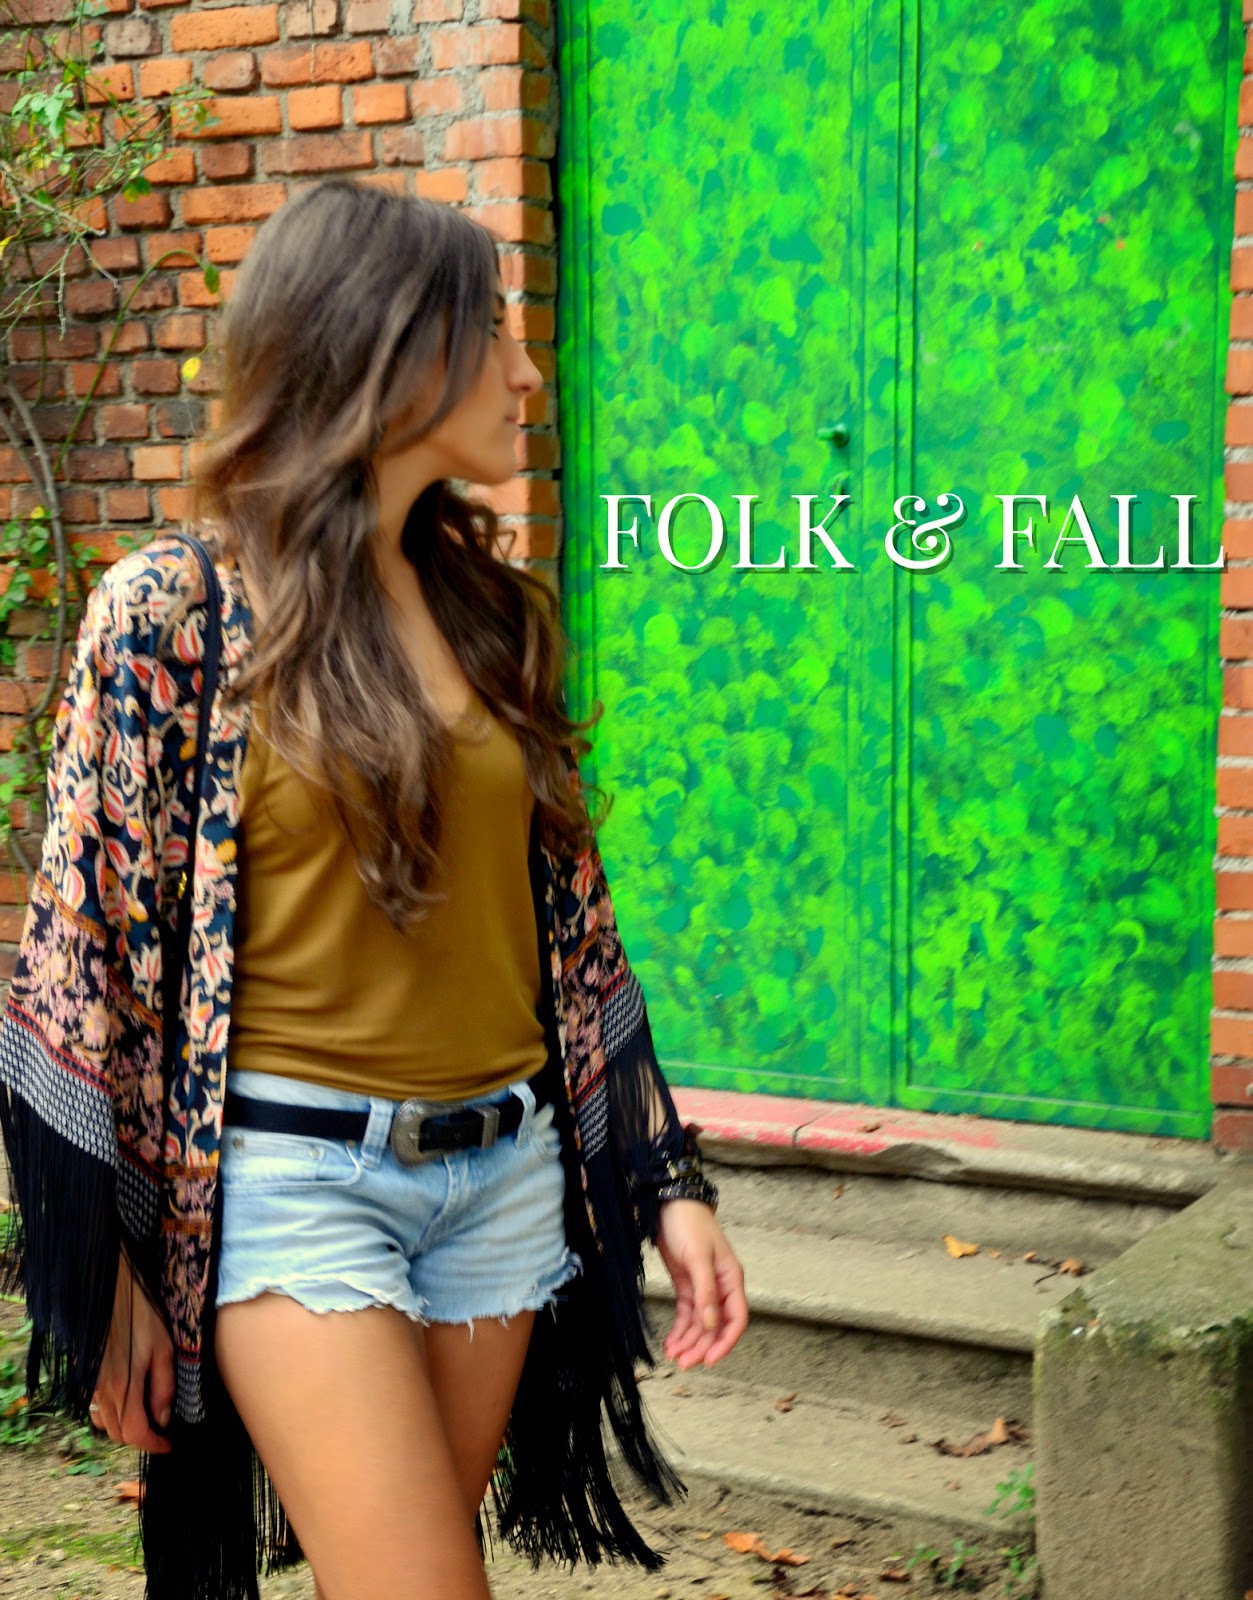  Folk & Fall